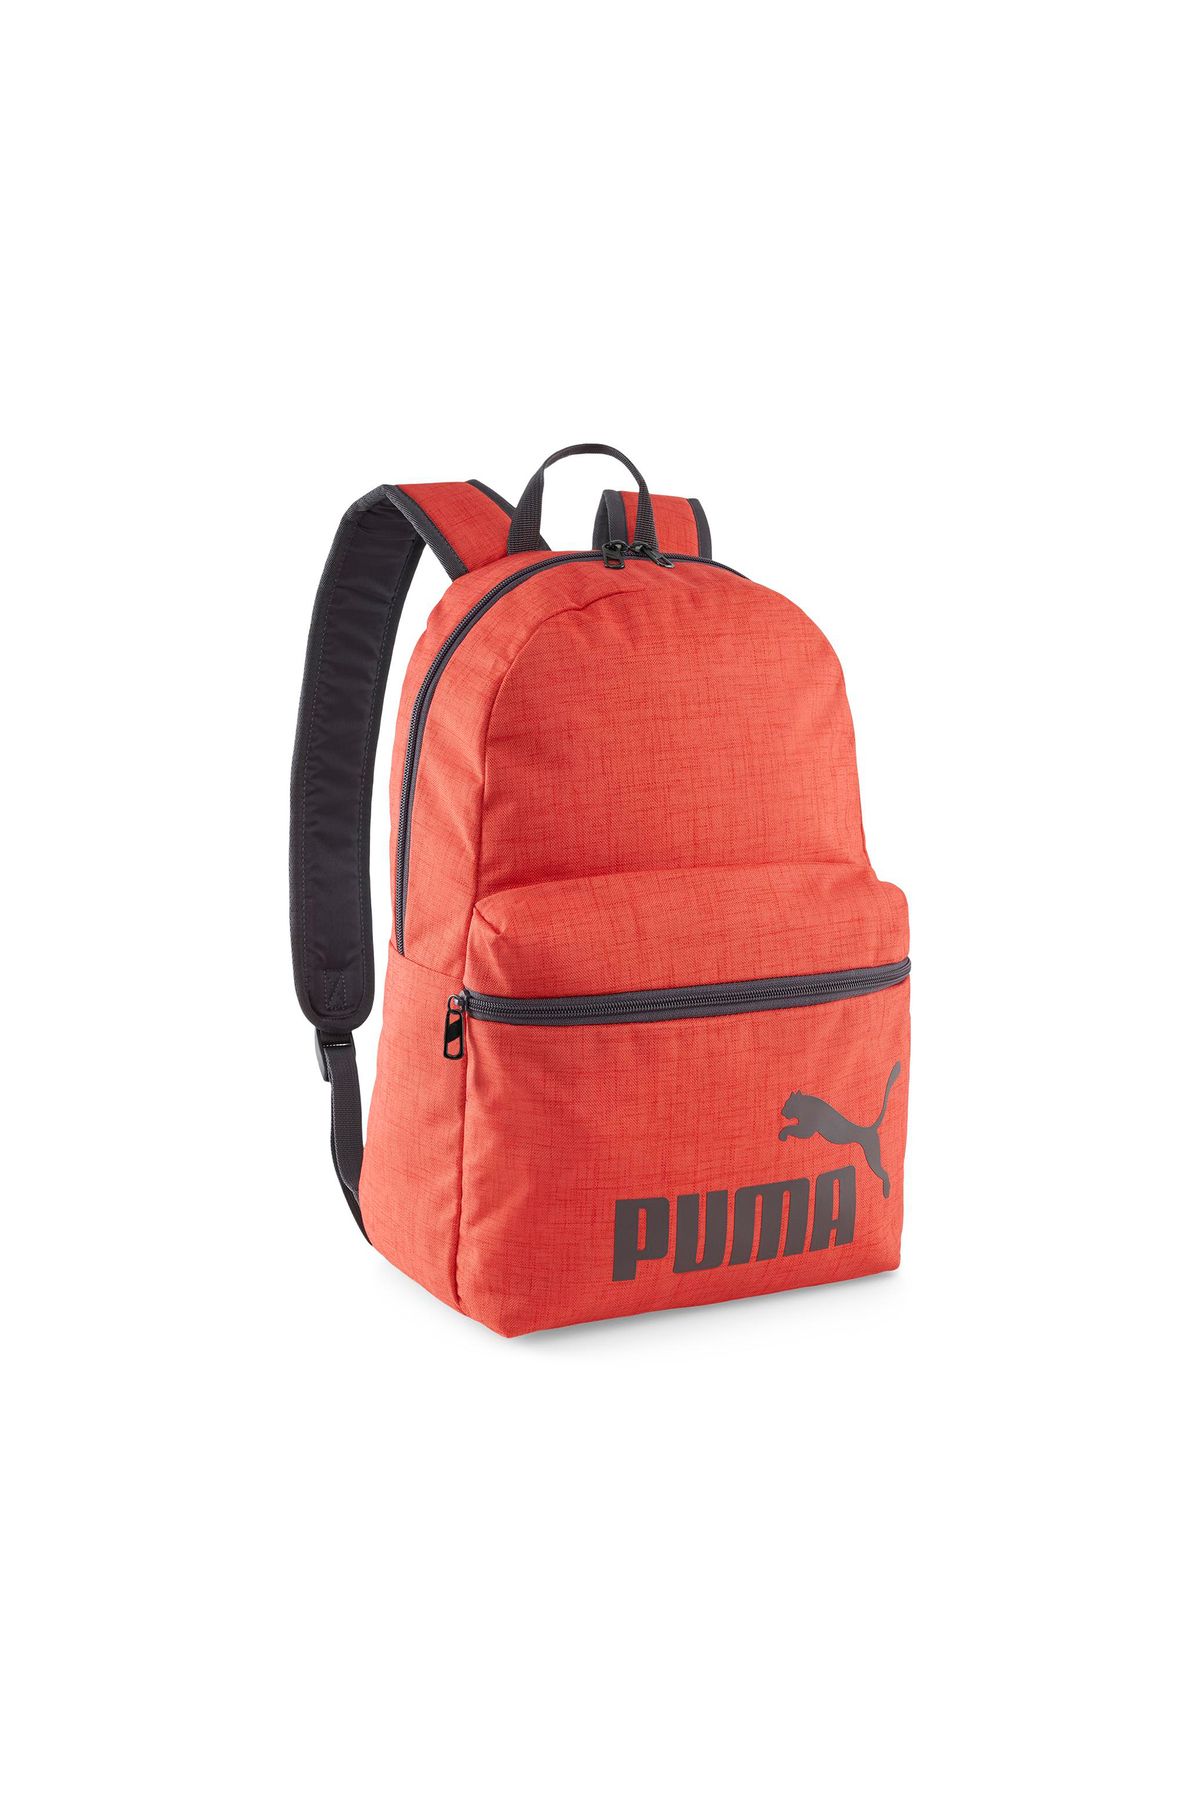 Puma Phase Backpack III Sırt Çantası 9011802